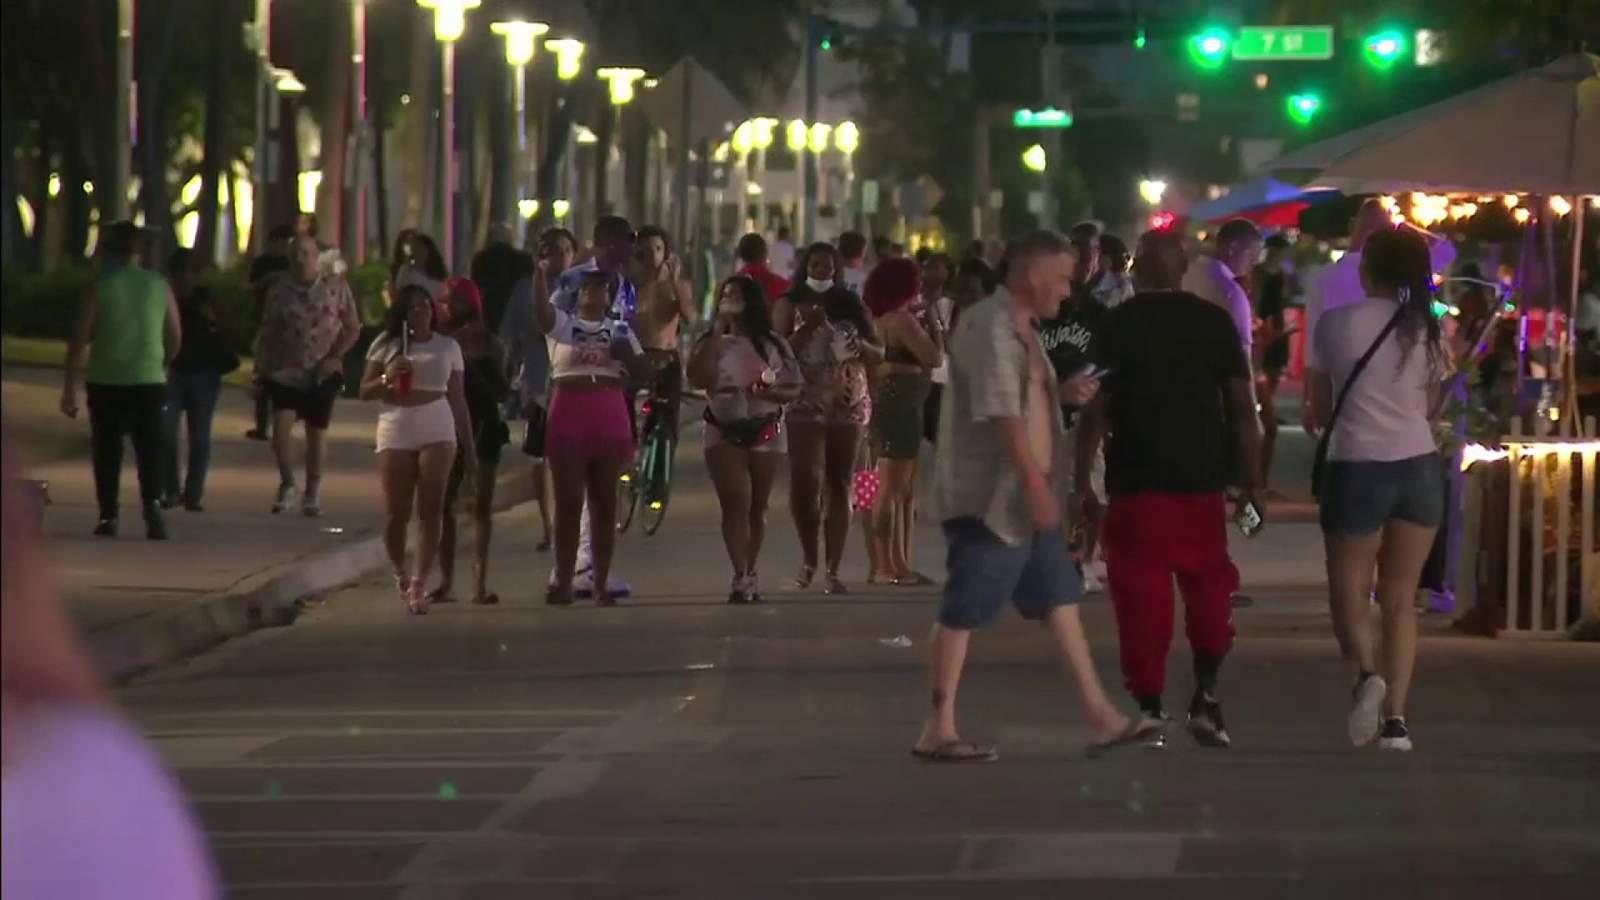 Miami Beach curfew aims to cut down on raucous nights